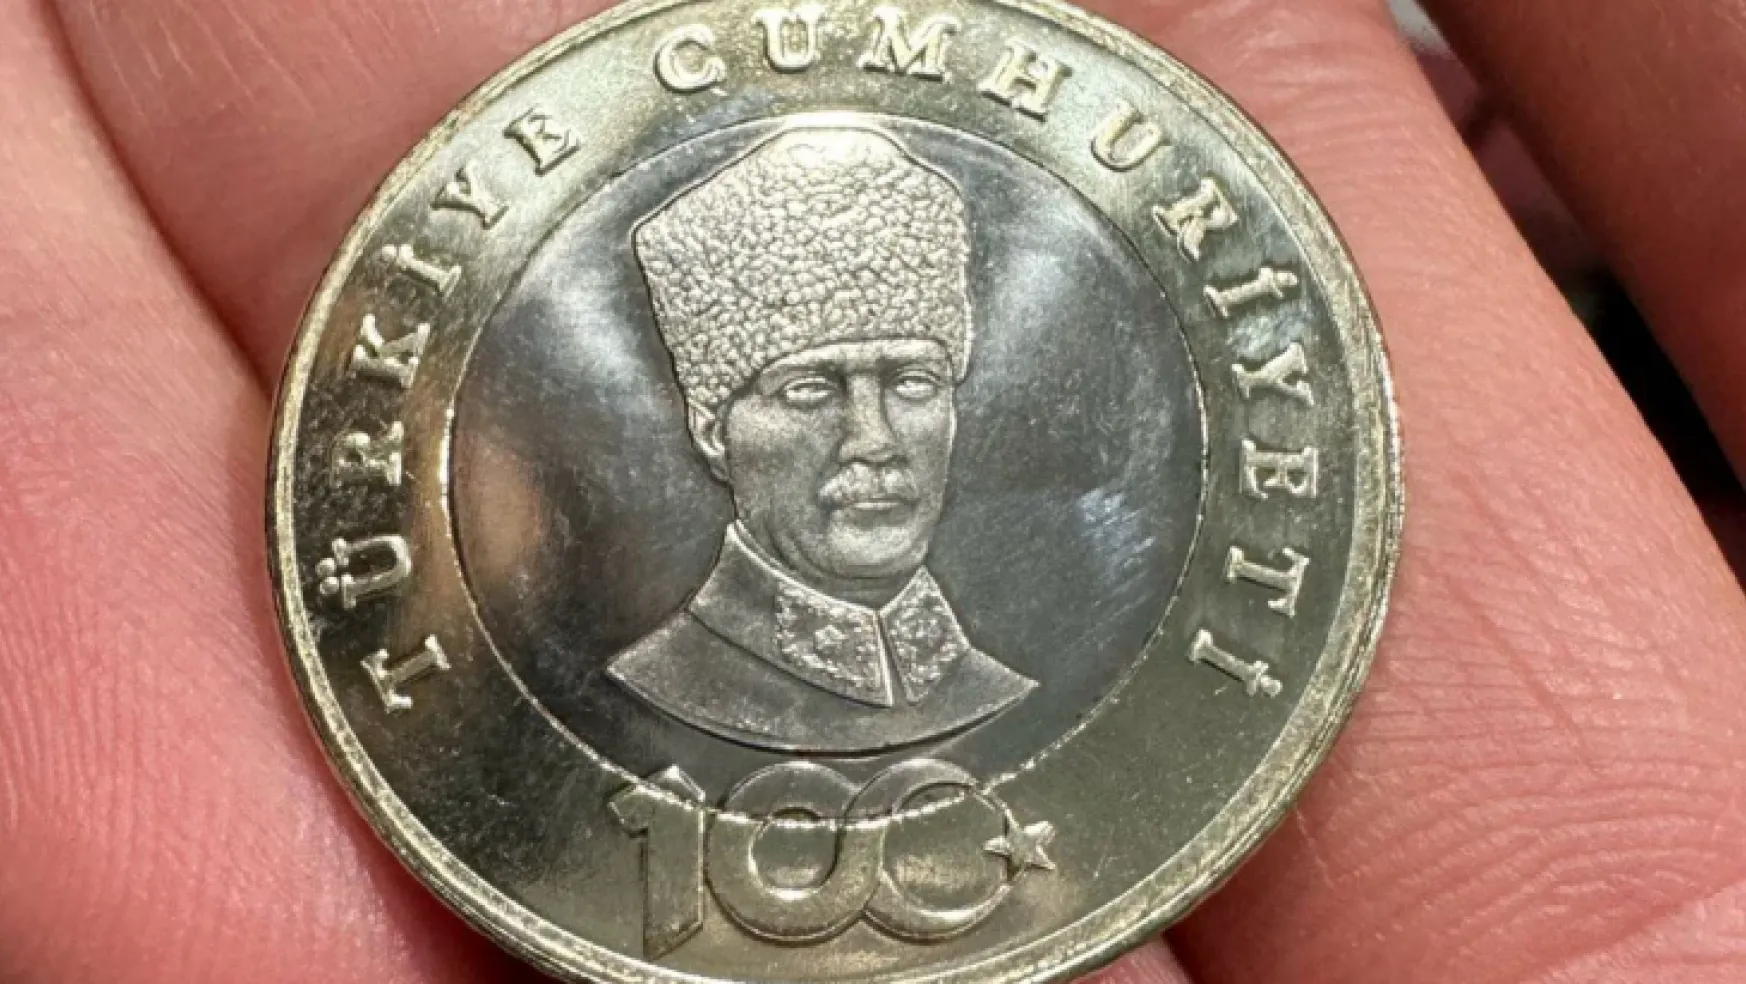 Darphane'den madeni 5 liraların üzerindeki Atatürk rölyefi için açıklama